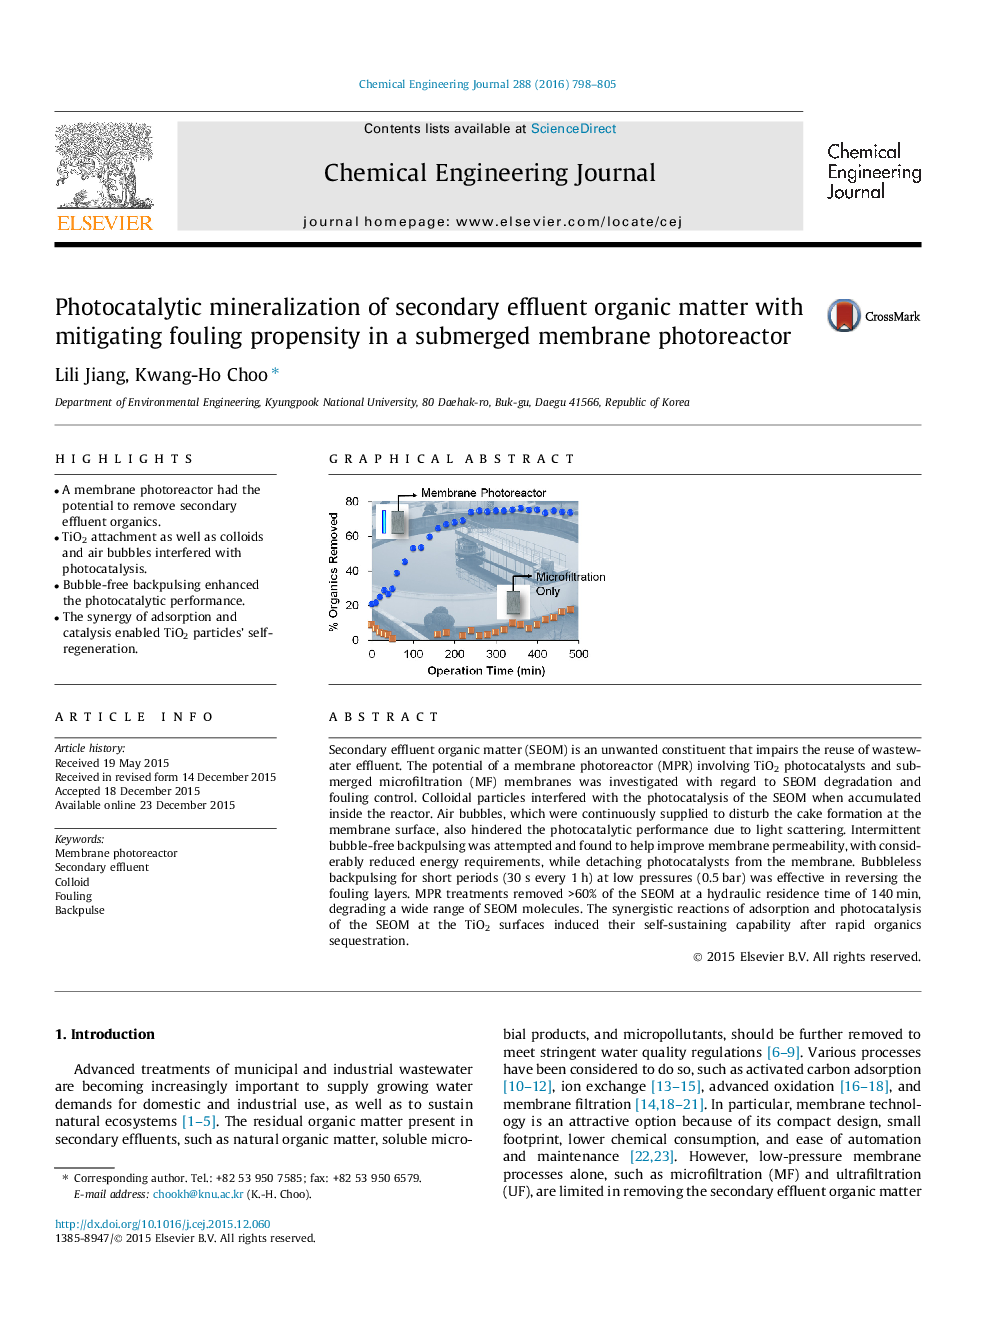 کانه زنی فوتوکاتالیستی مواد آلی ثانویه پساب با تسریع در ریزش در یک گیرنده غشاء در زیر آب 